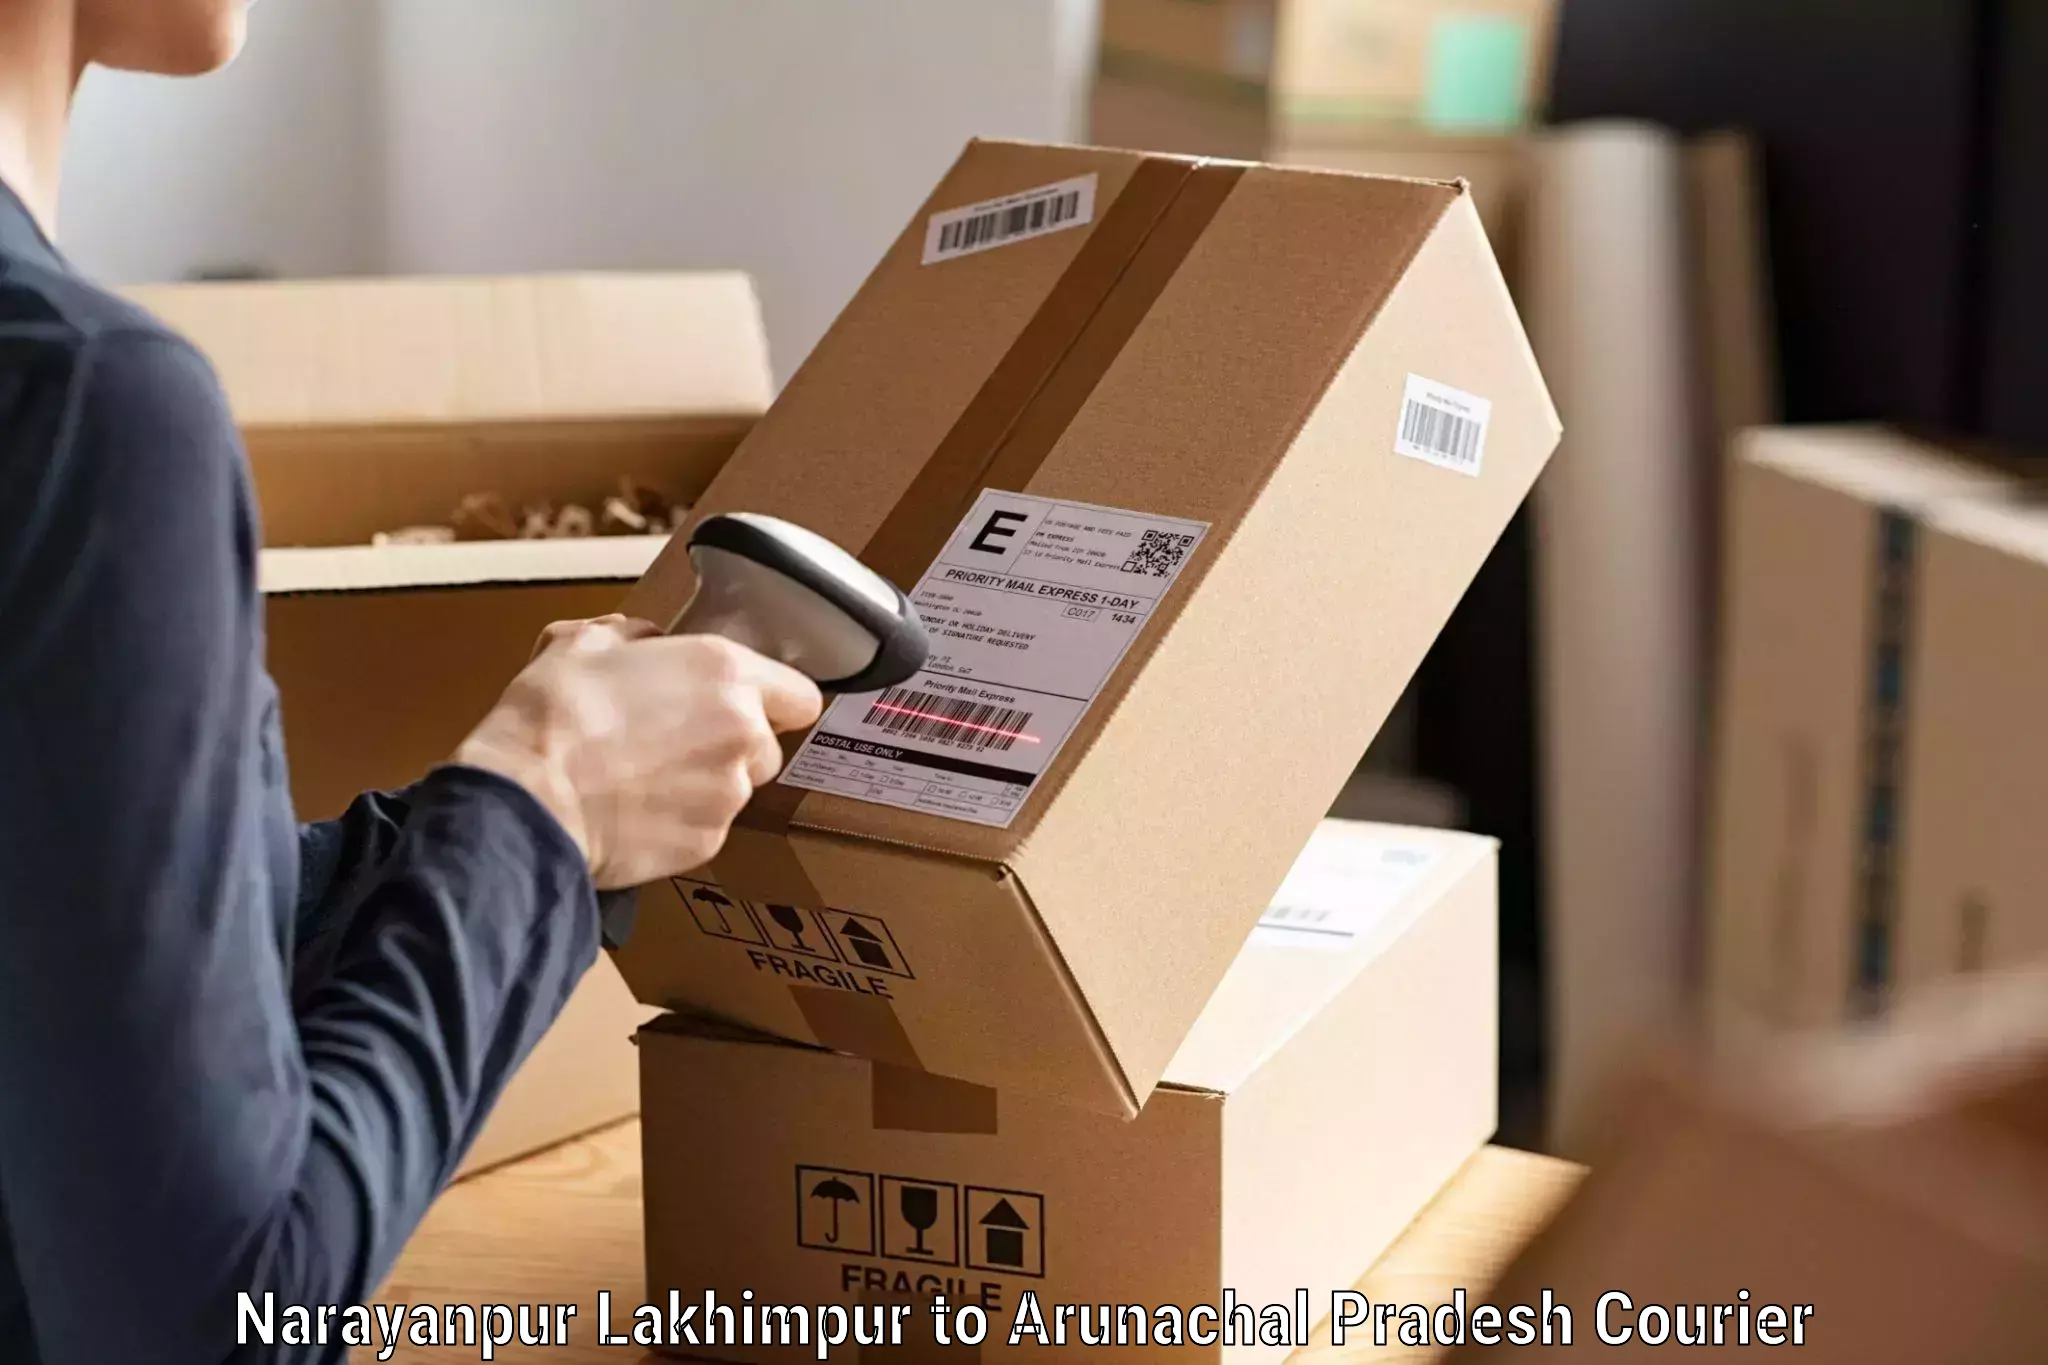 High-performance logistics Narayanpur Lakhimpur to Arunachal Pradesh